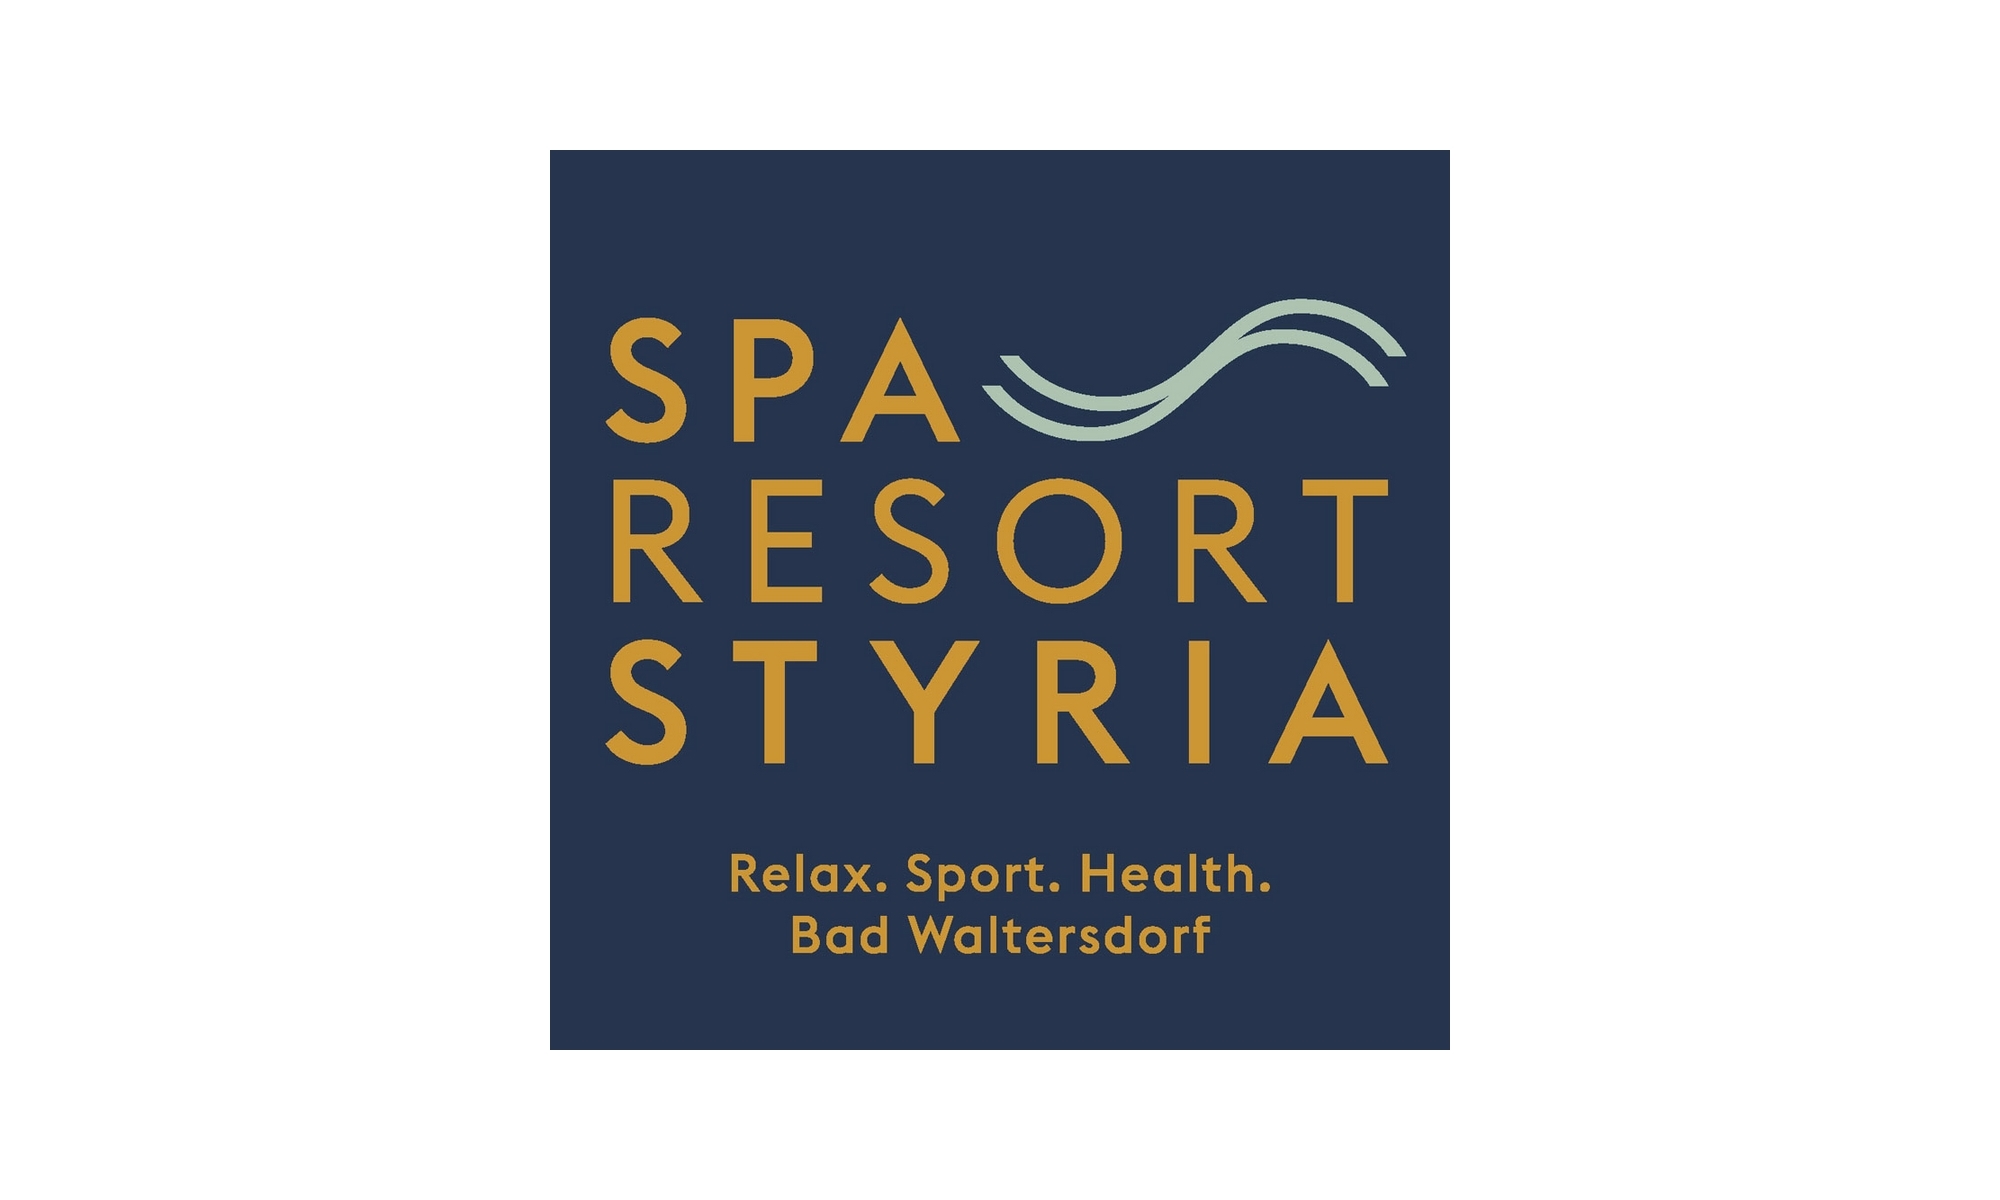 Spa Resort Styria